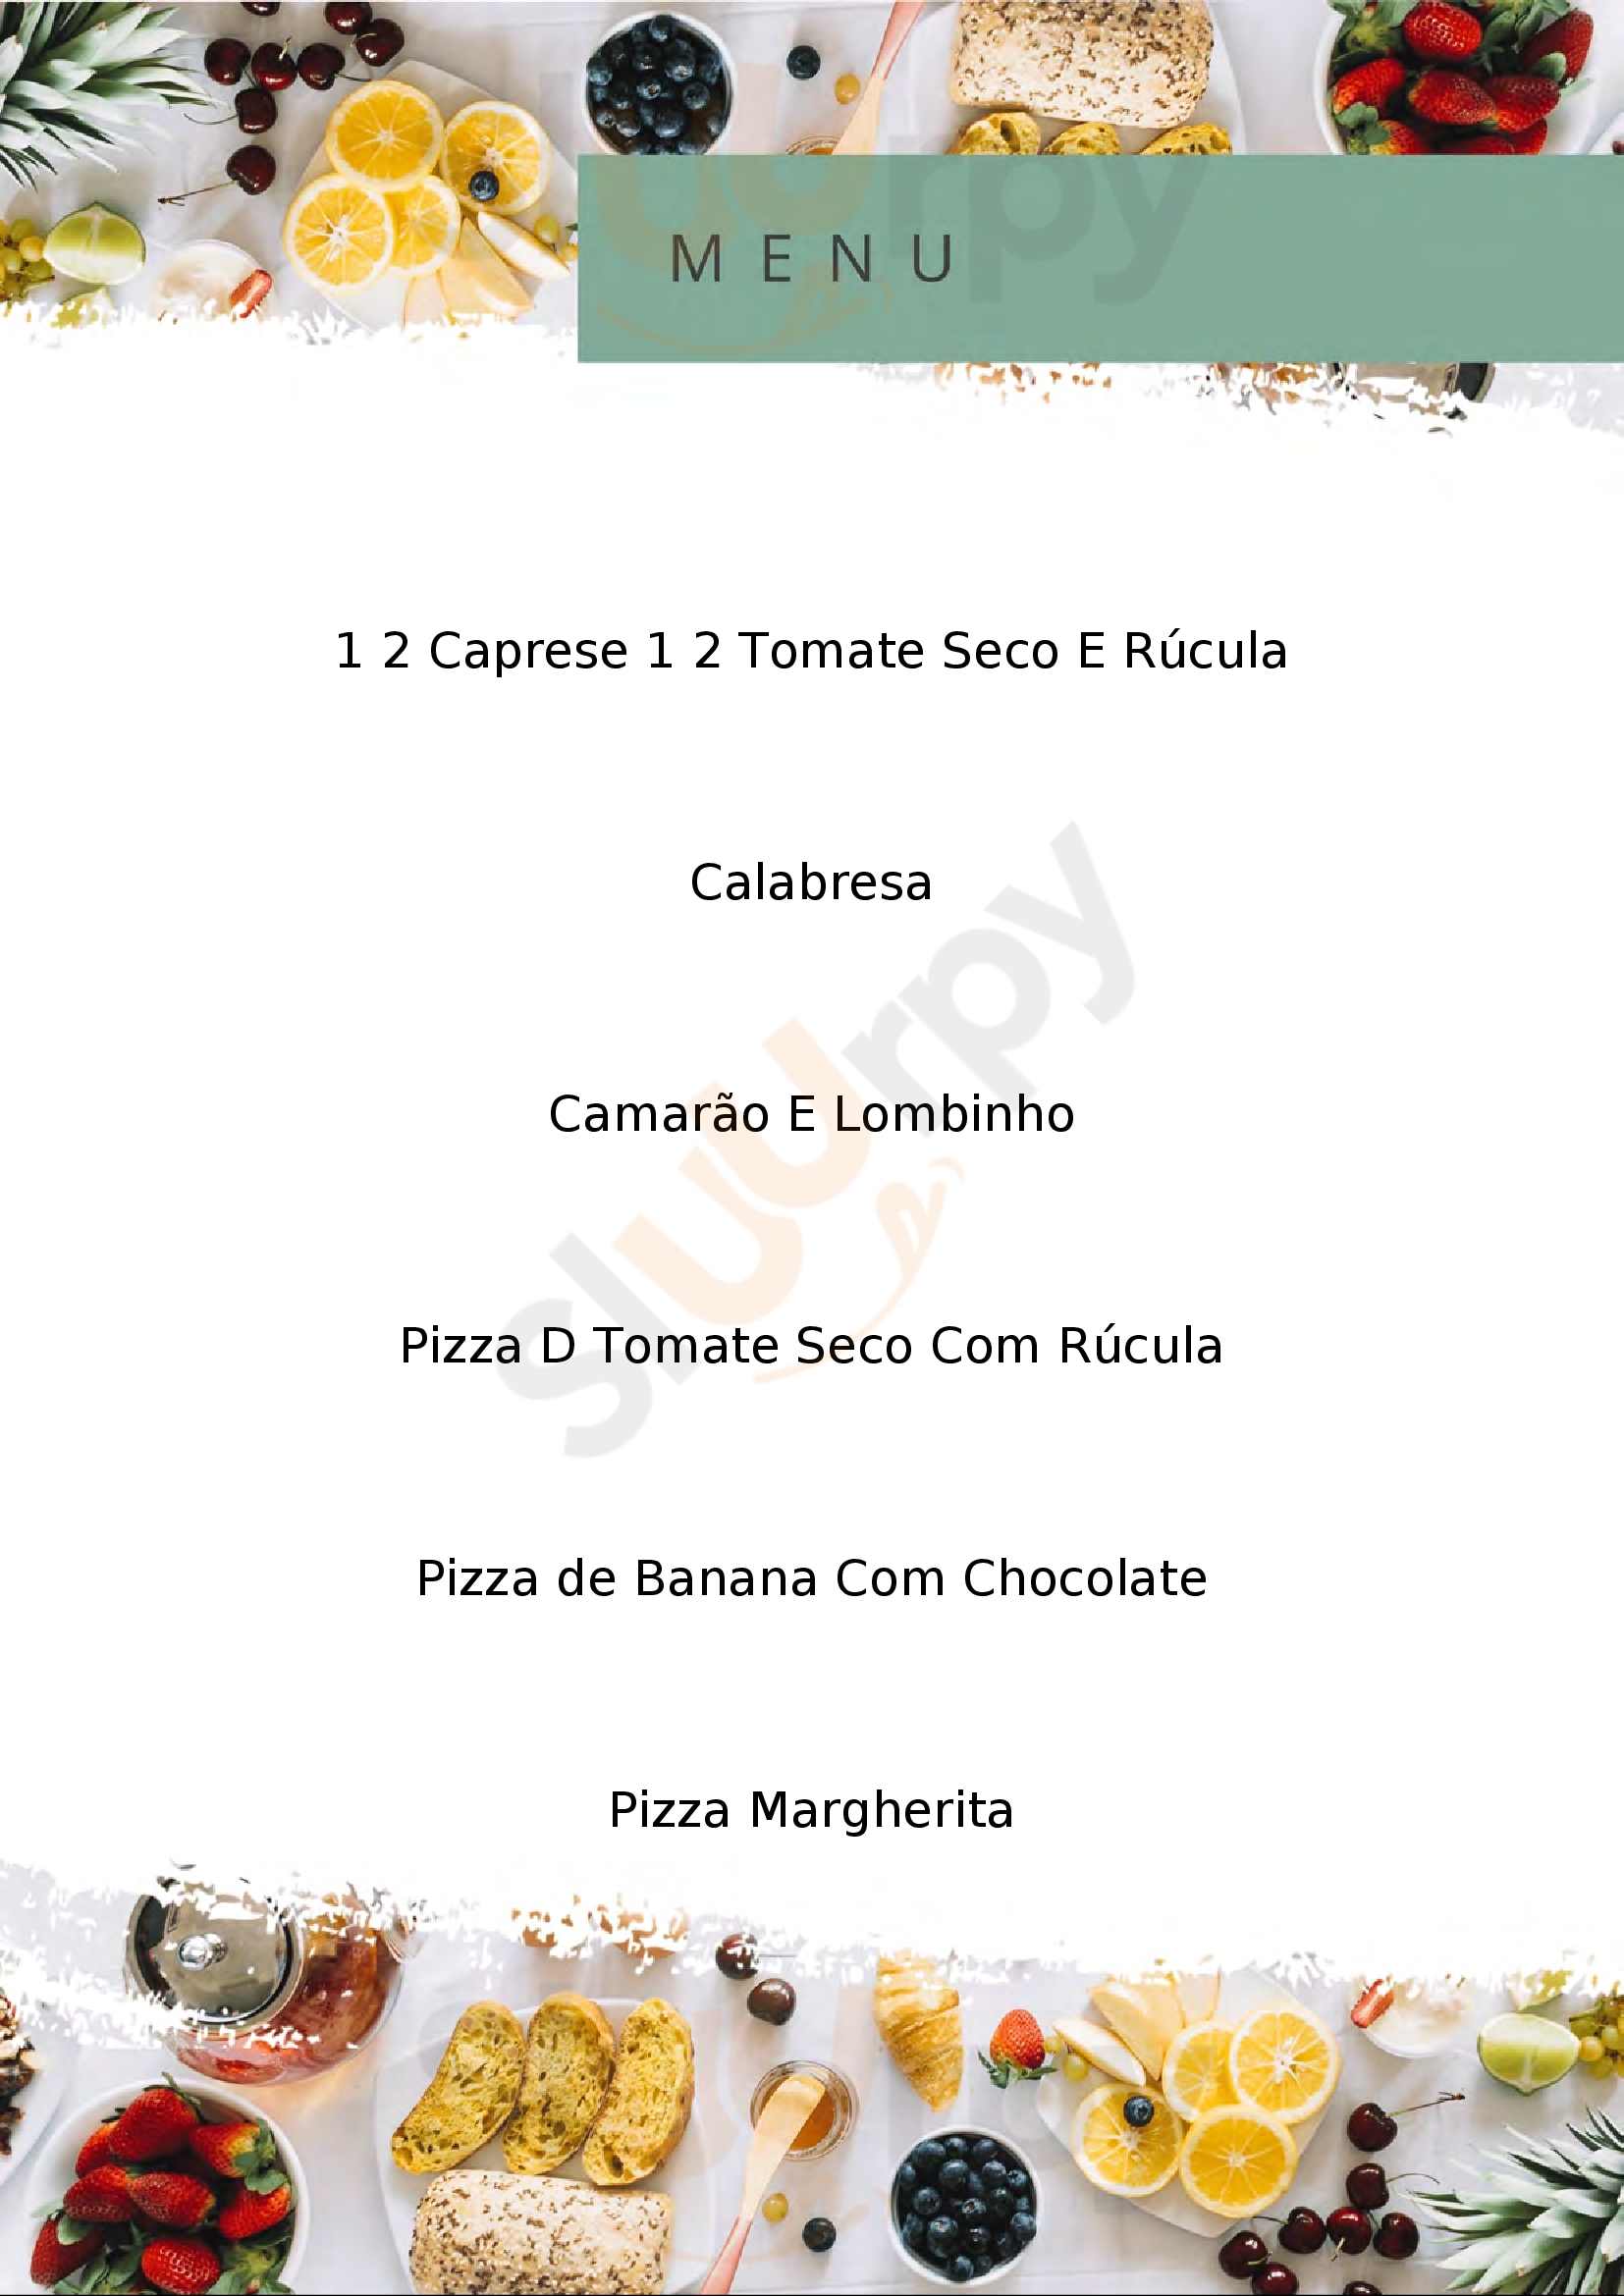 Pizzaria Formaggi Rio de Janeiro Menu - 1